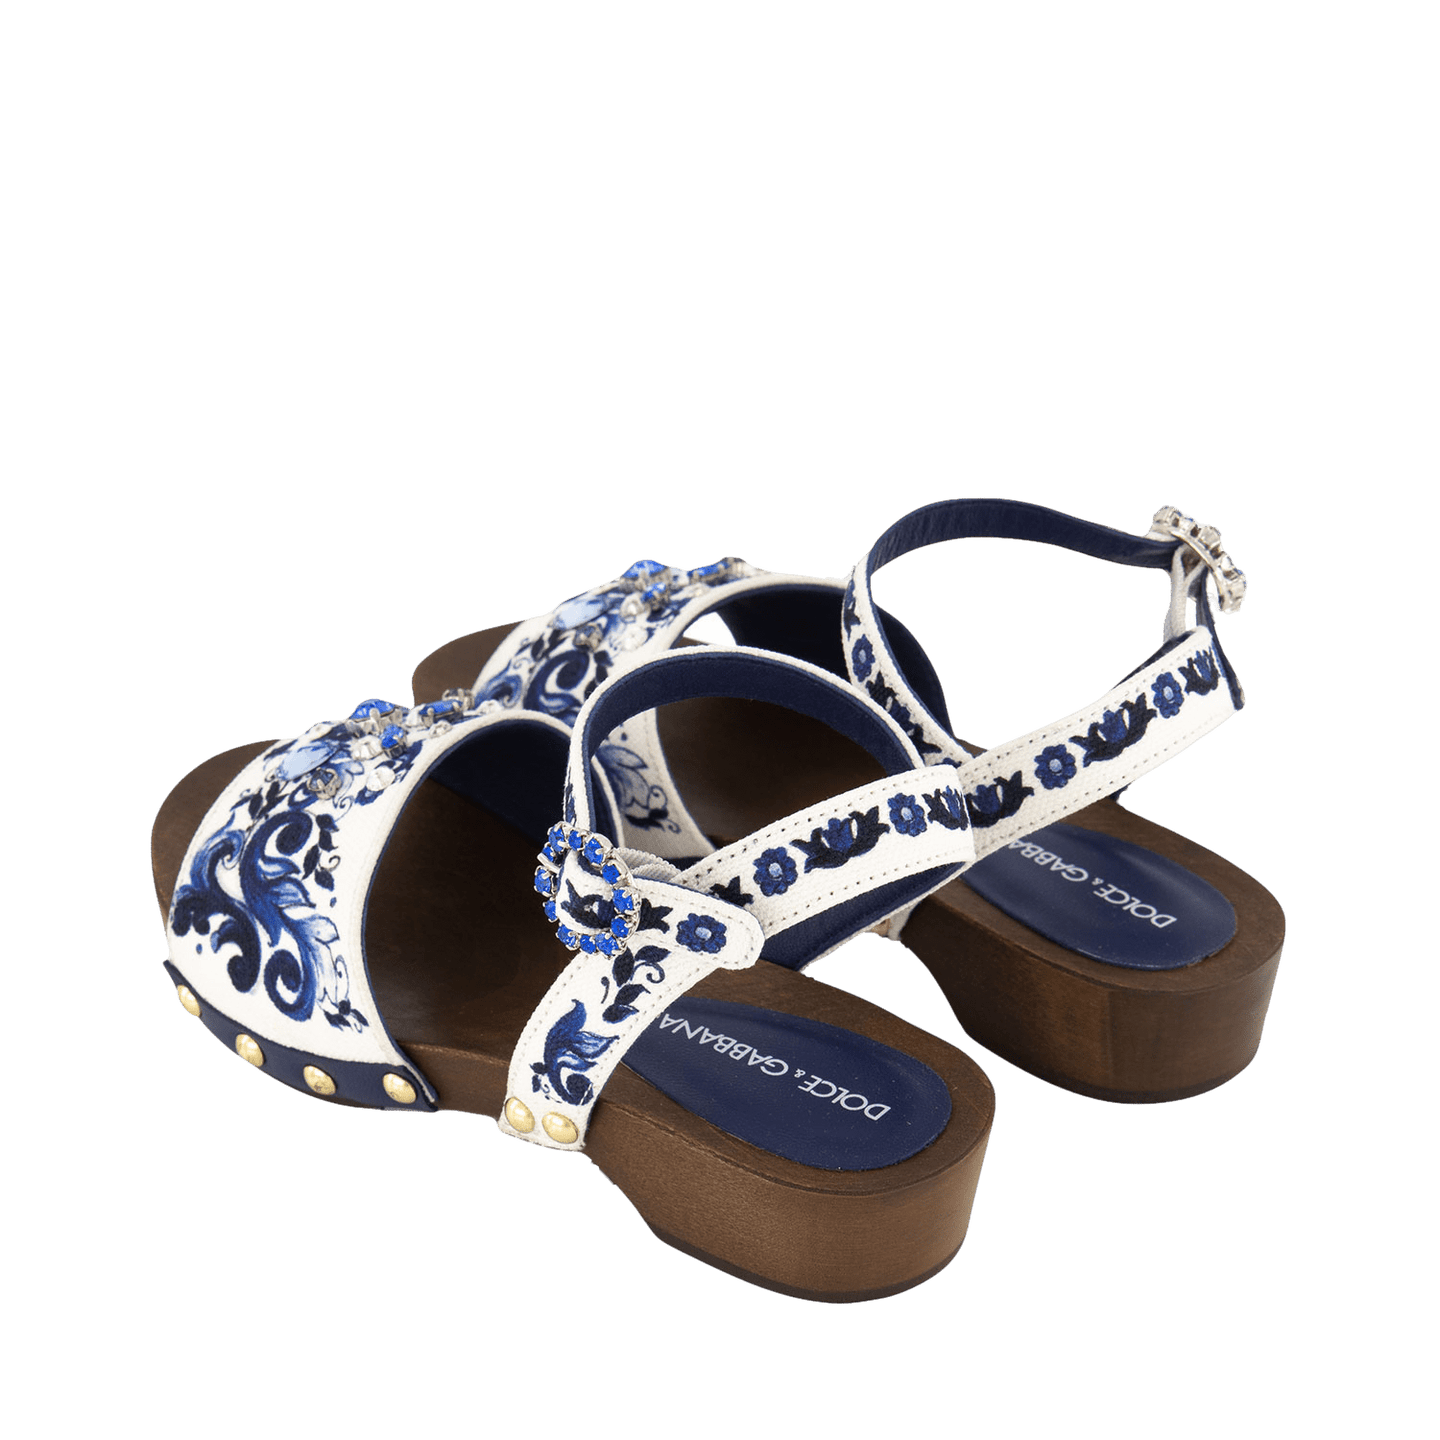 Dolce & Gabbana Kinder Meisjes Sandalen Blauw 25